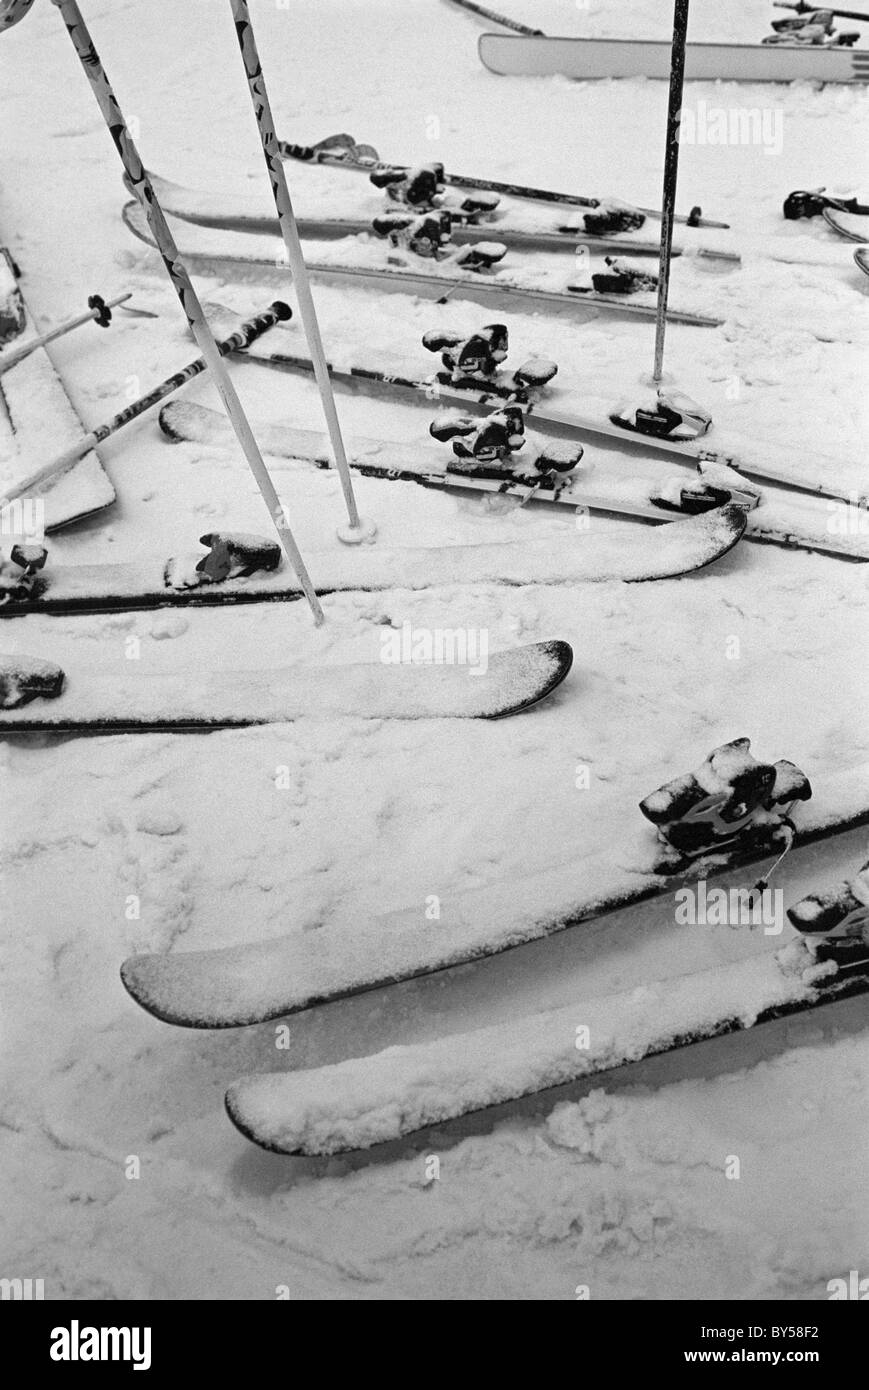 Los esquís y bastones de esquí en la nieve. Foto de stock